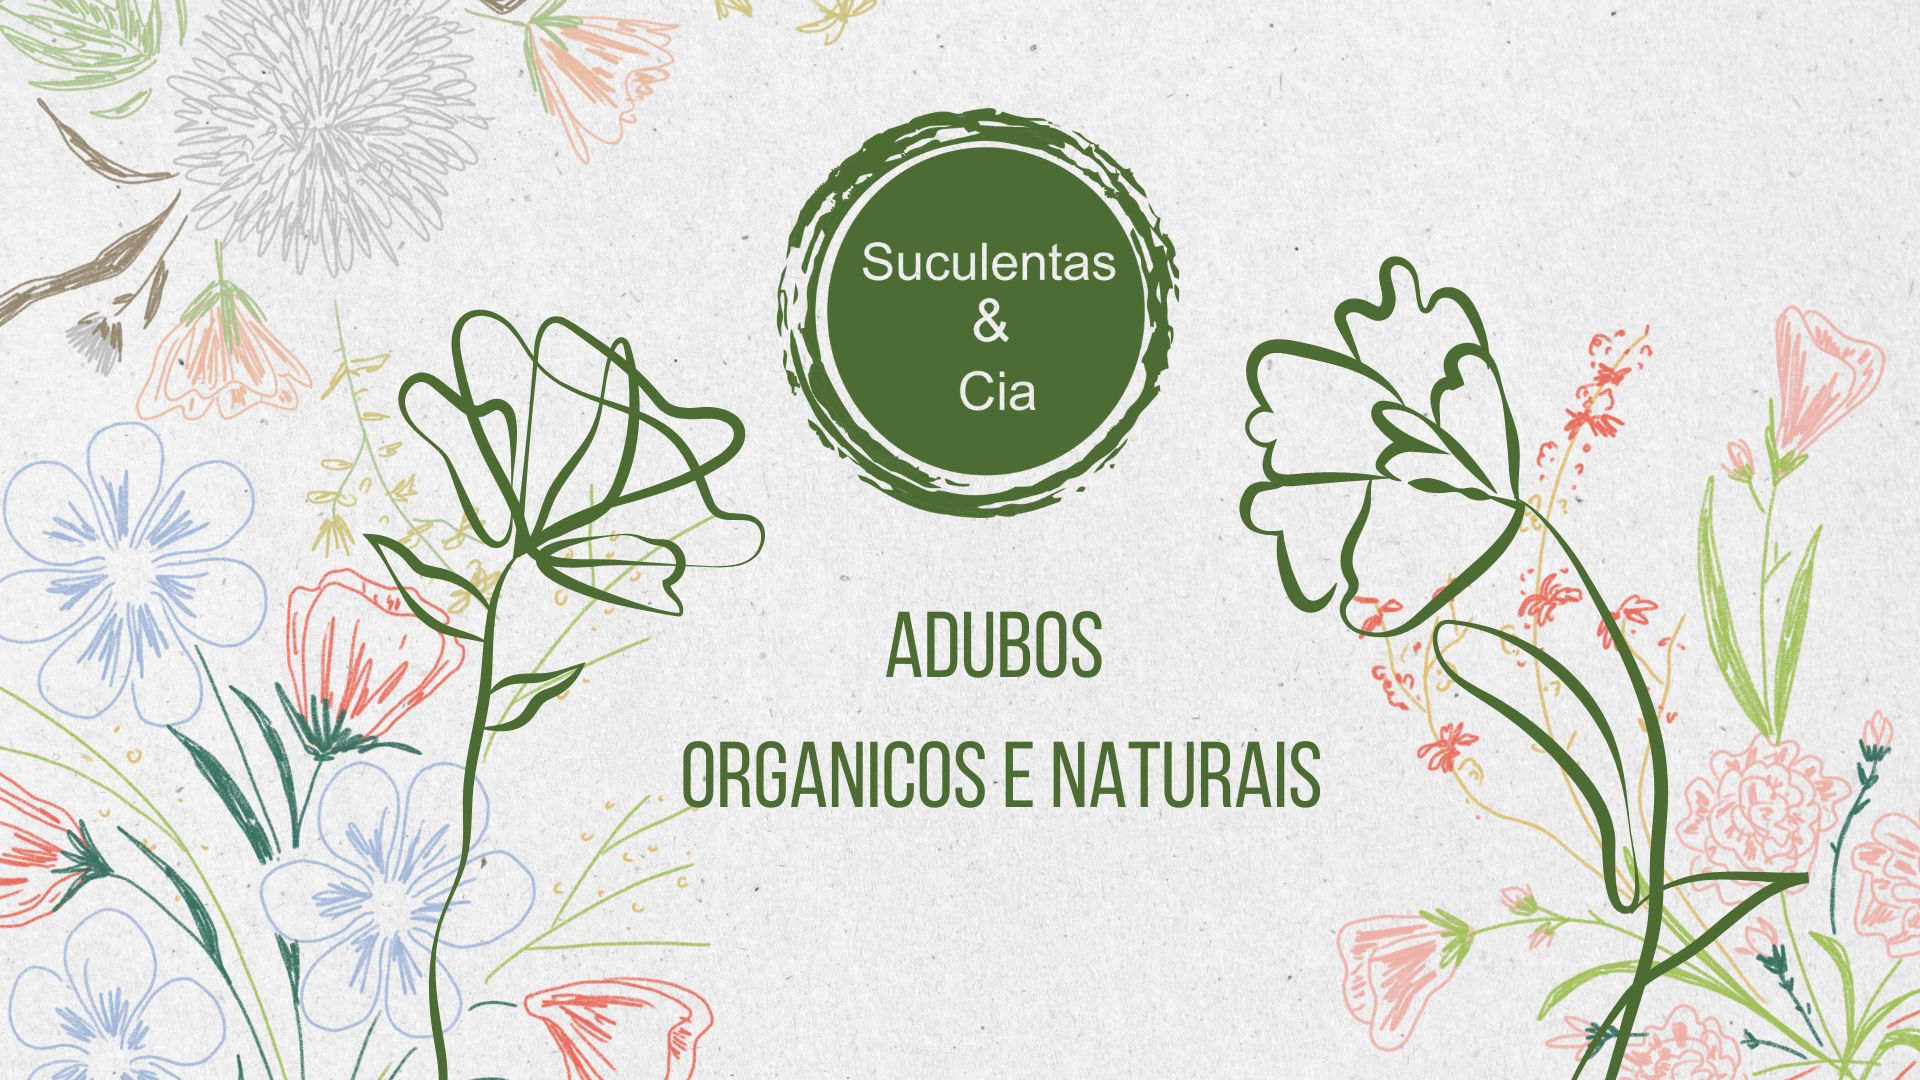 171421Ebook Digital de Abudos Organicos e naturais